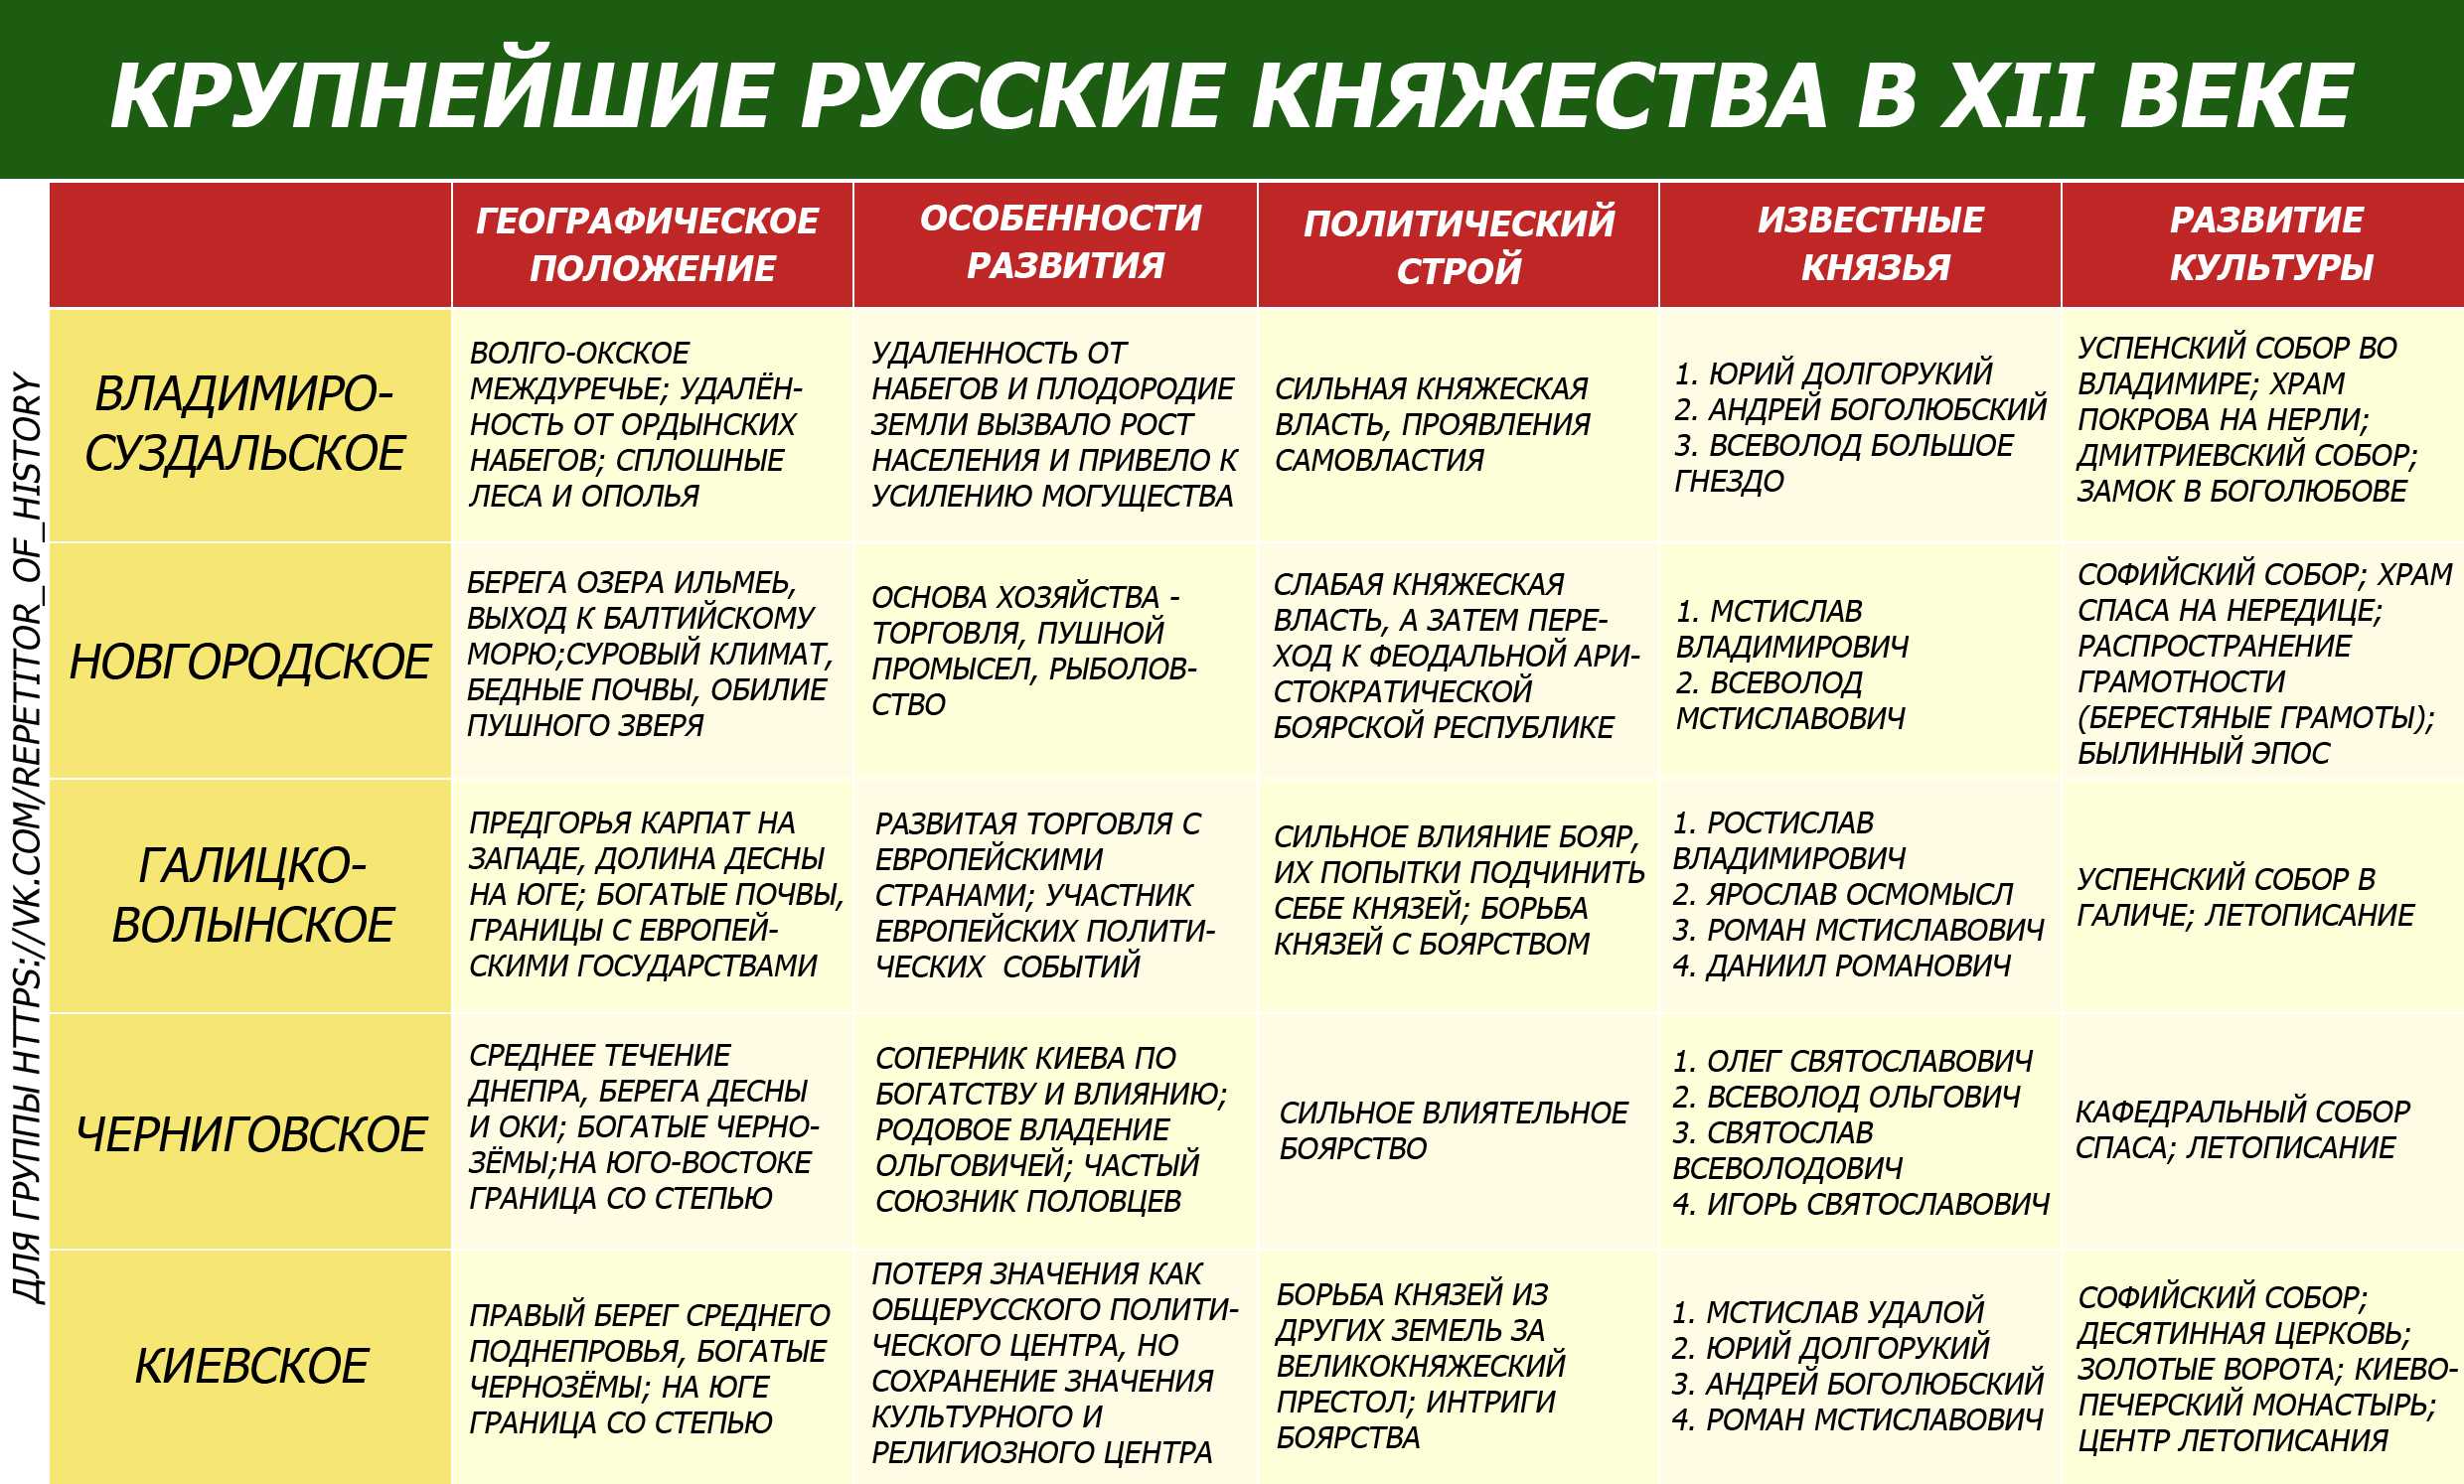 Политическая раздробленность руси таблица история 6 класс